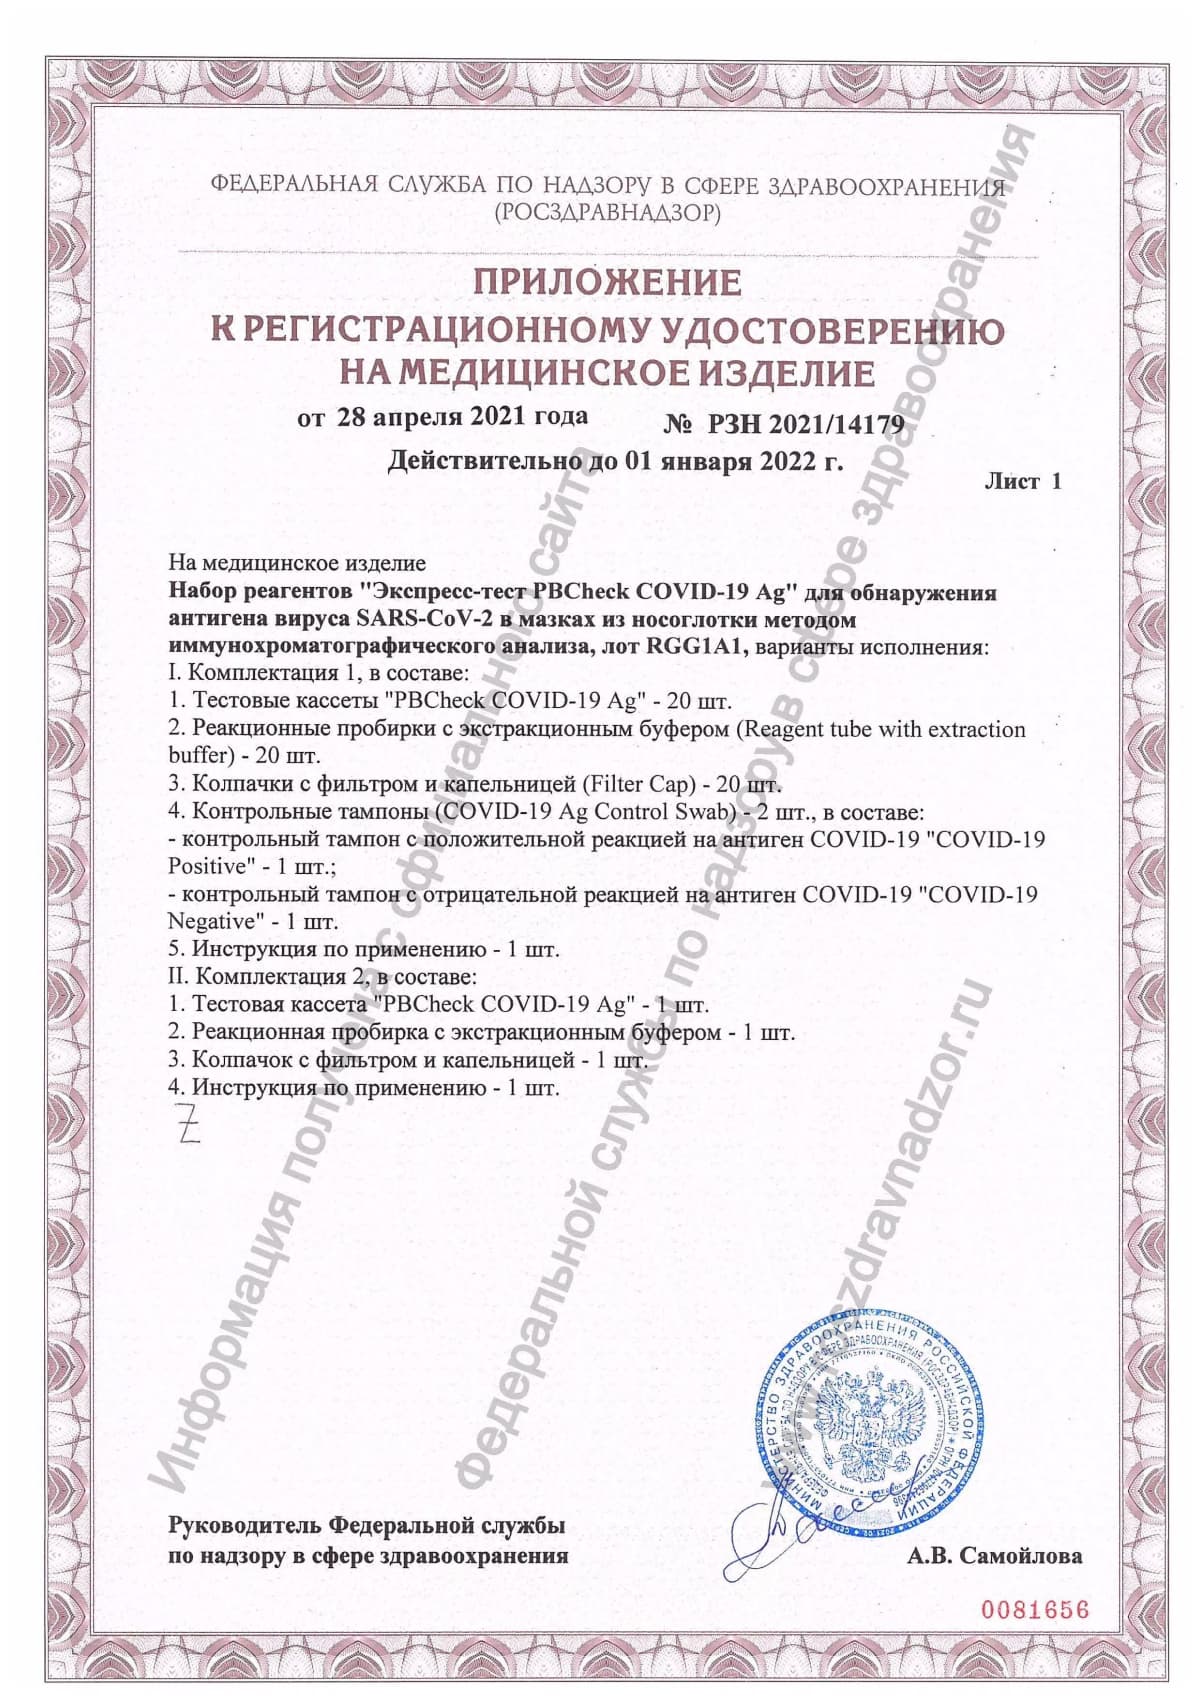 Приложение к регистрационному удостоверению на медицинское изделие pbcheck covid-19 ag